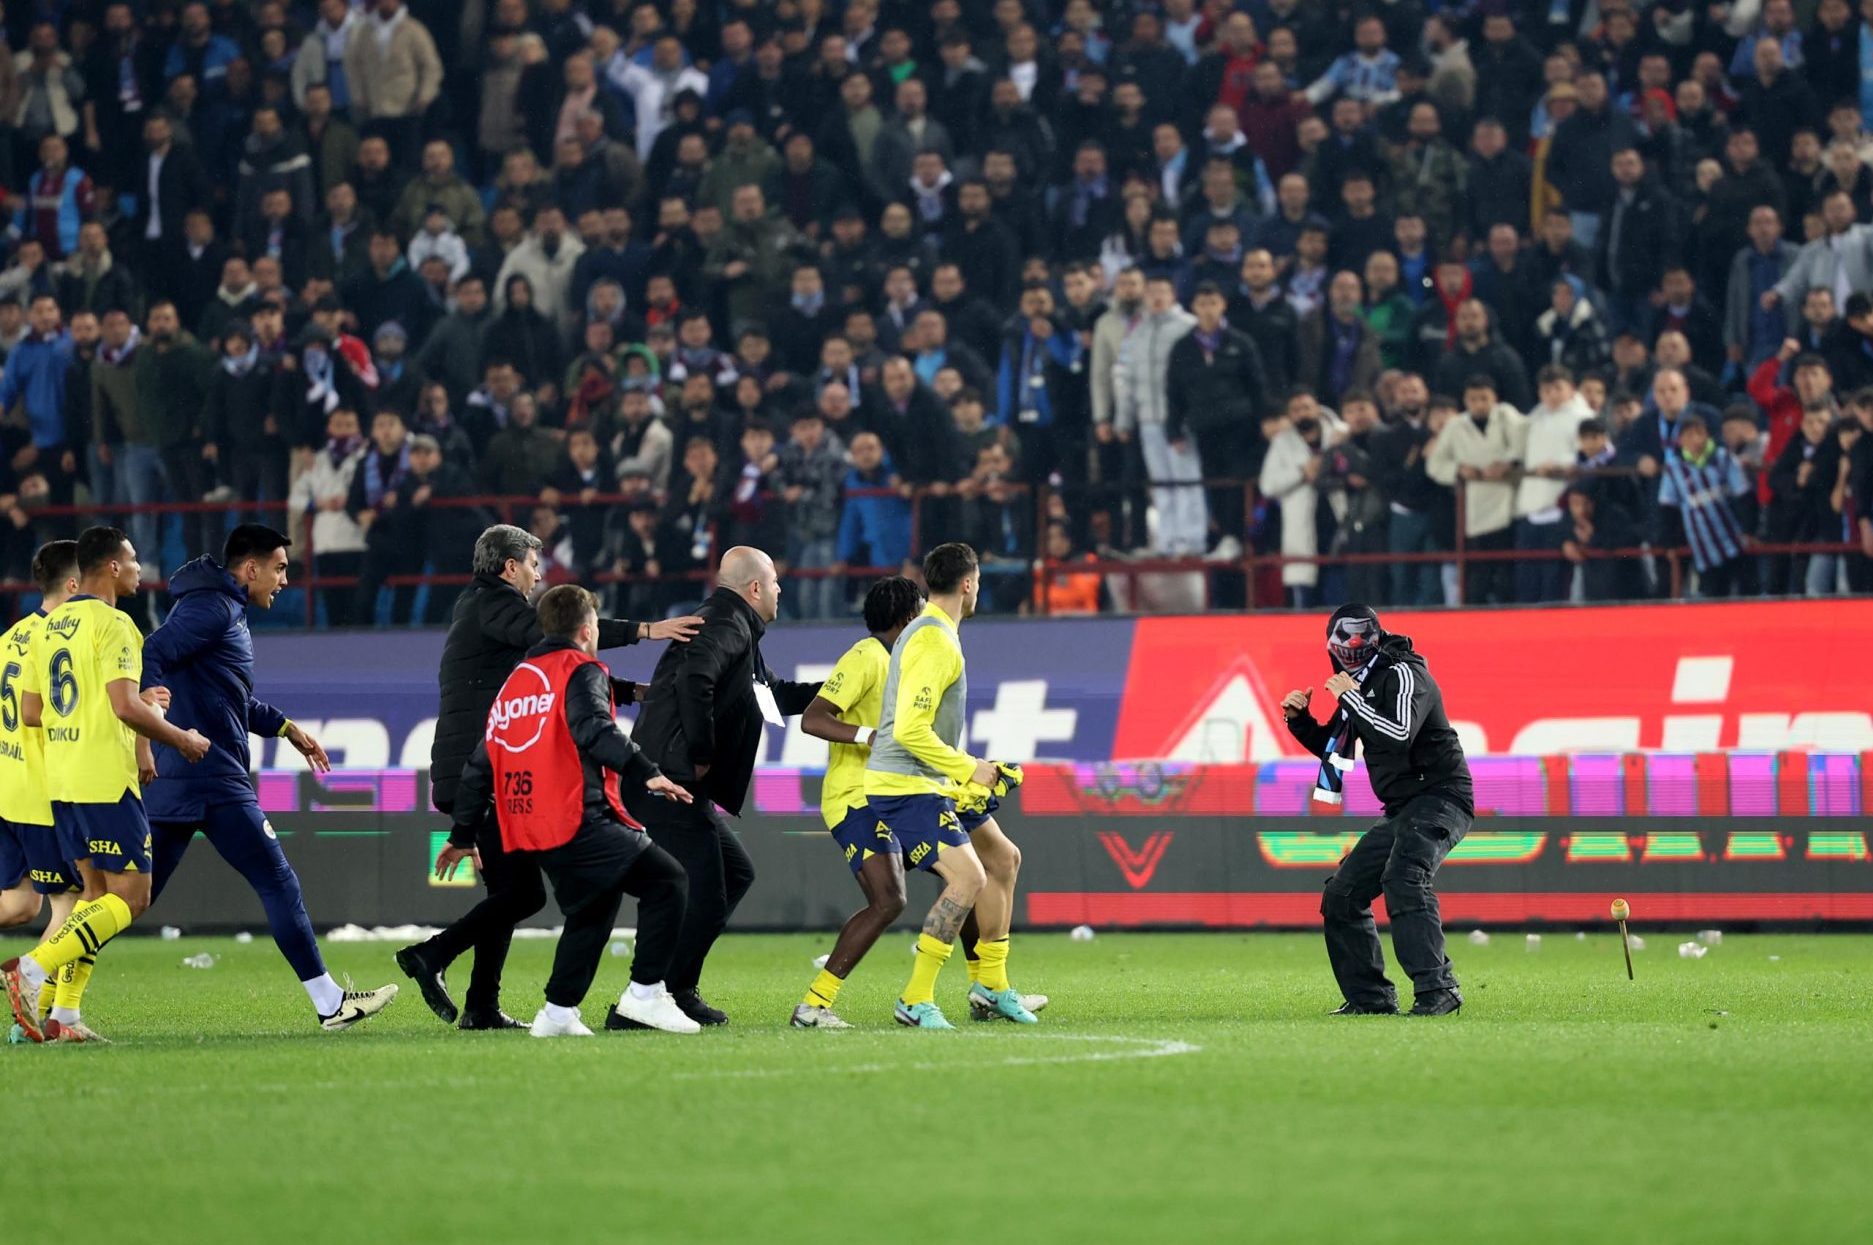 Fenerbahçeli futbolculara saldıran maskeli taraftar, tribünde "kelebek" sallamış